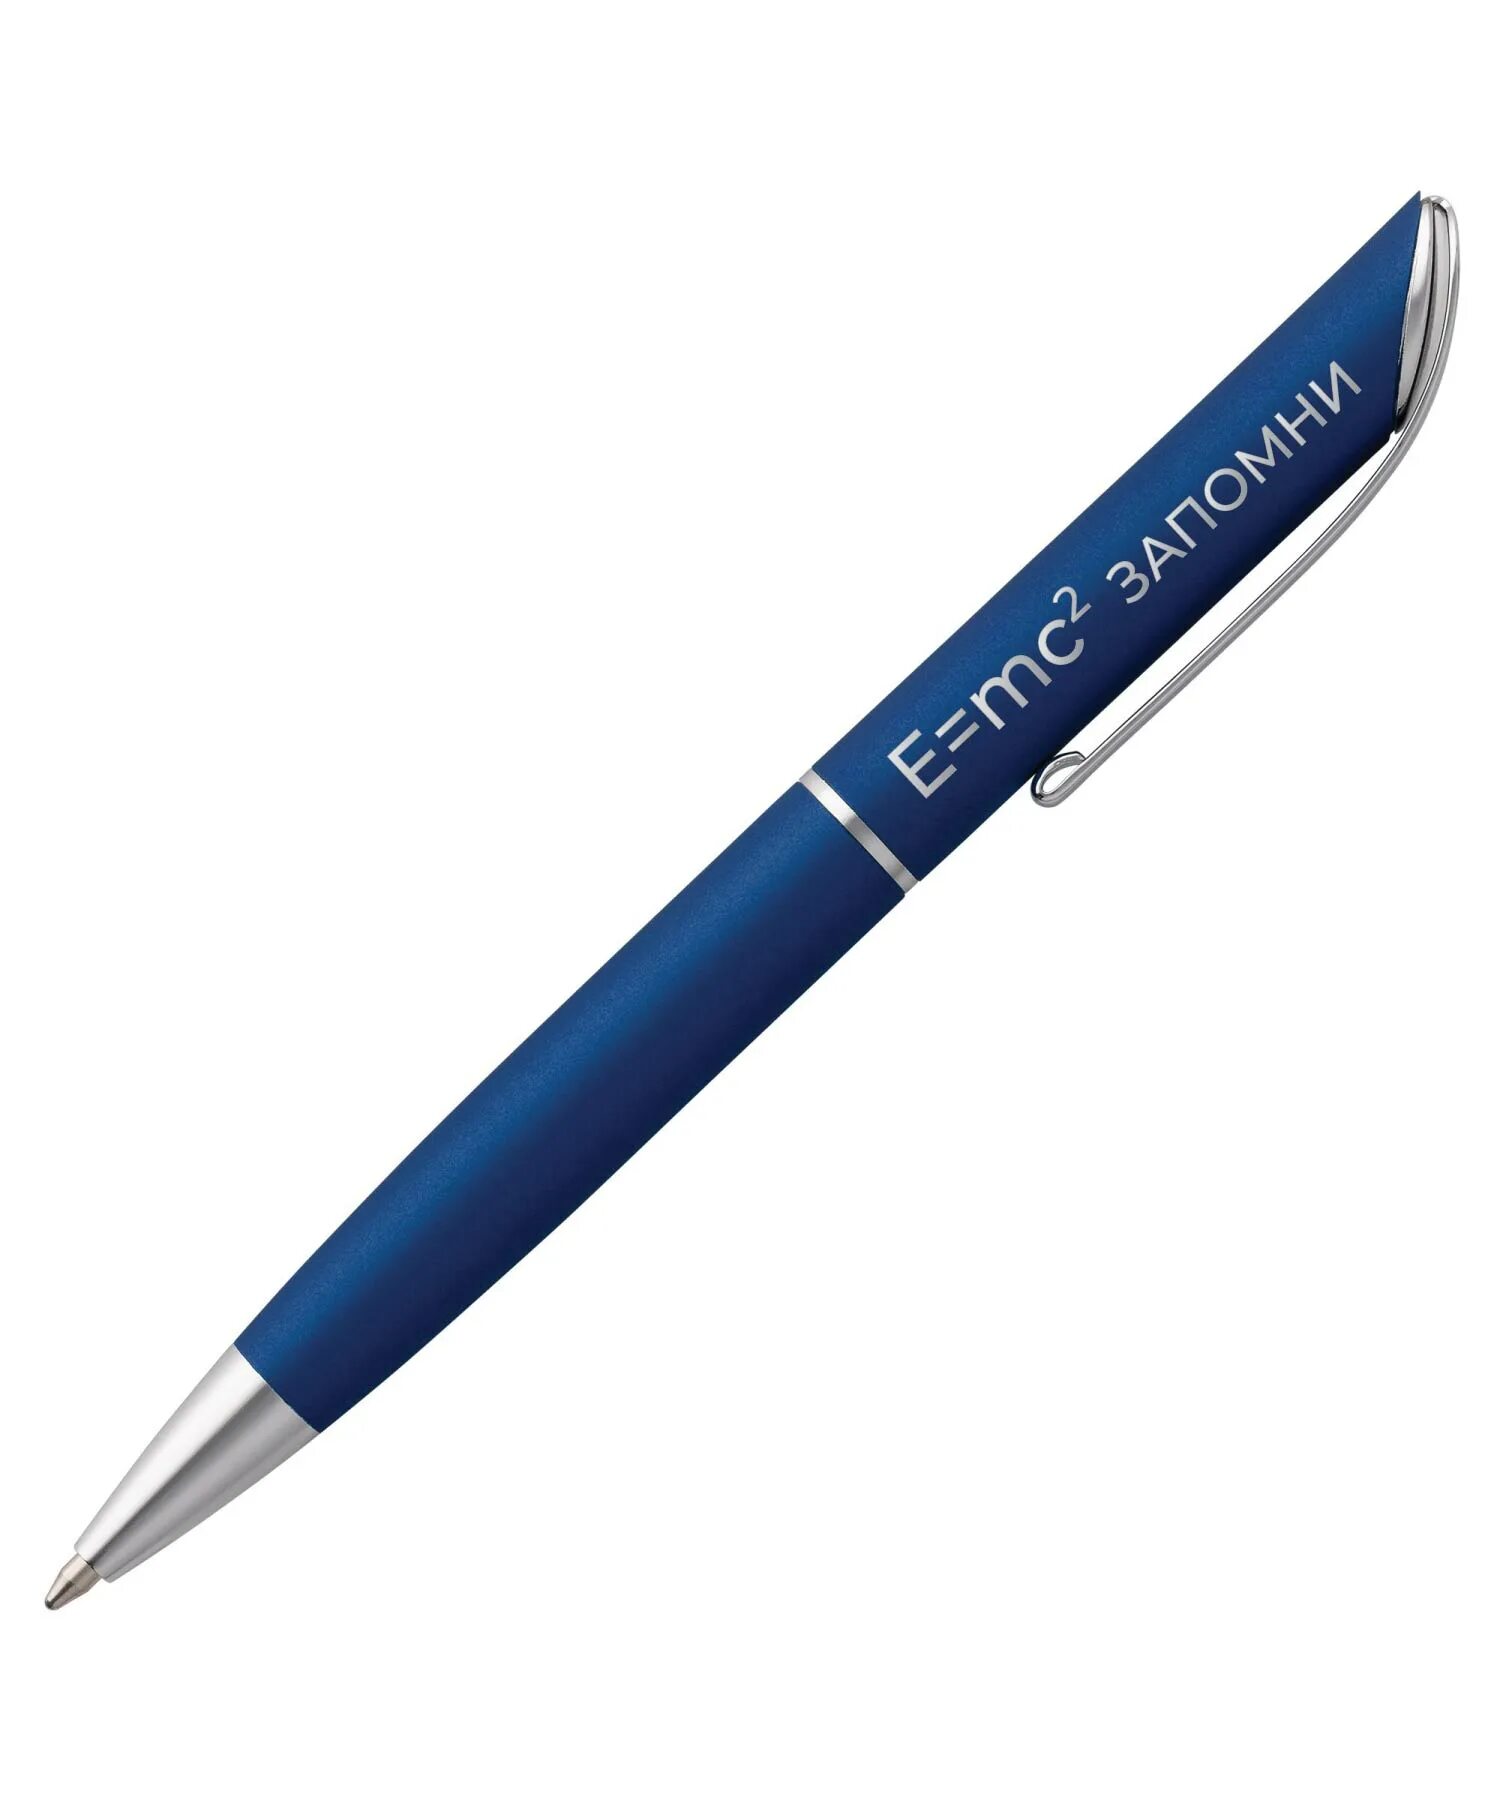 Ручка. Ручка "Sienna", синяя. Фон с ручкой. Ручка шариковая Glide, серая.